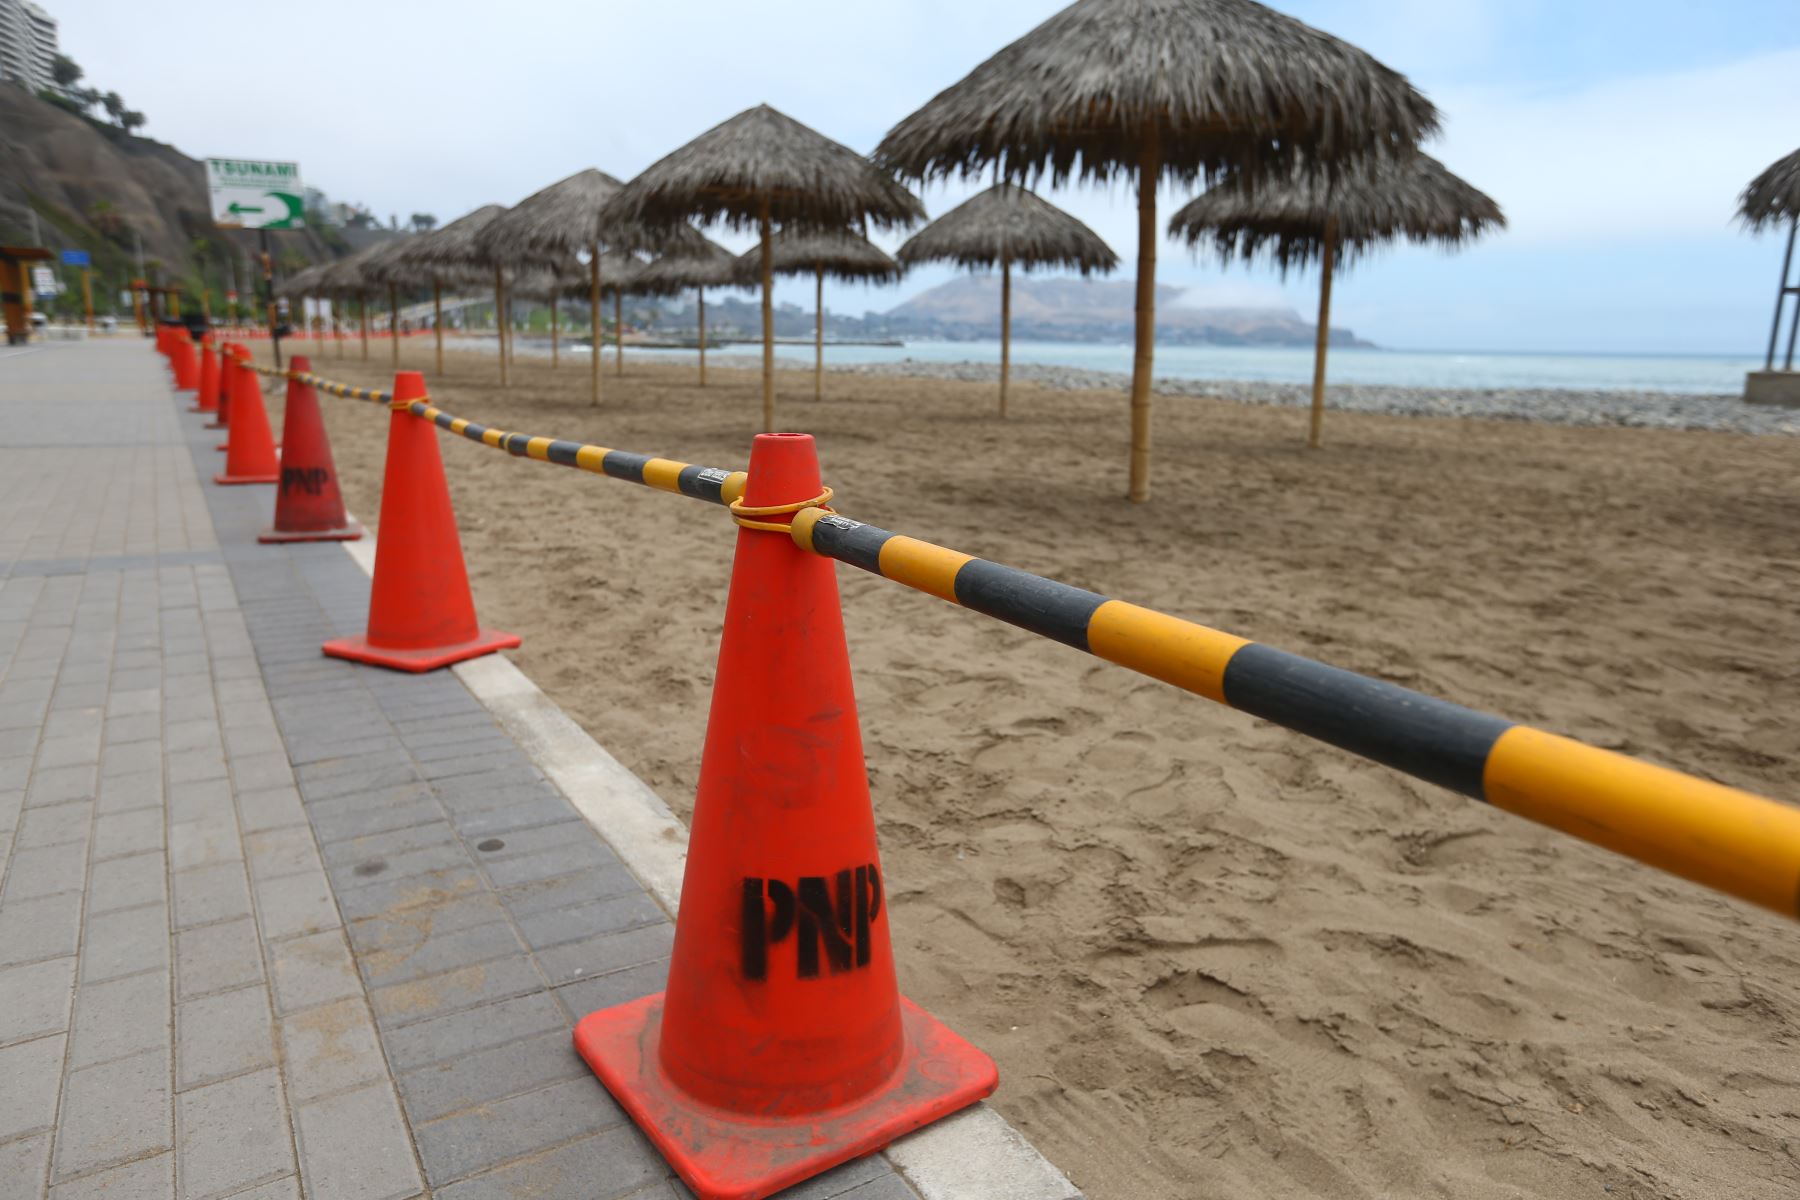 Alcalde de Miraflores solicitará al Minsa cierre “inmediato” de playas de su distrito por gripe aviar